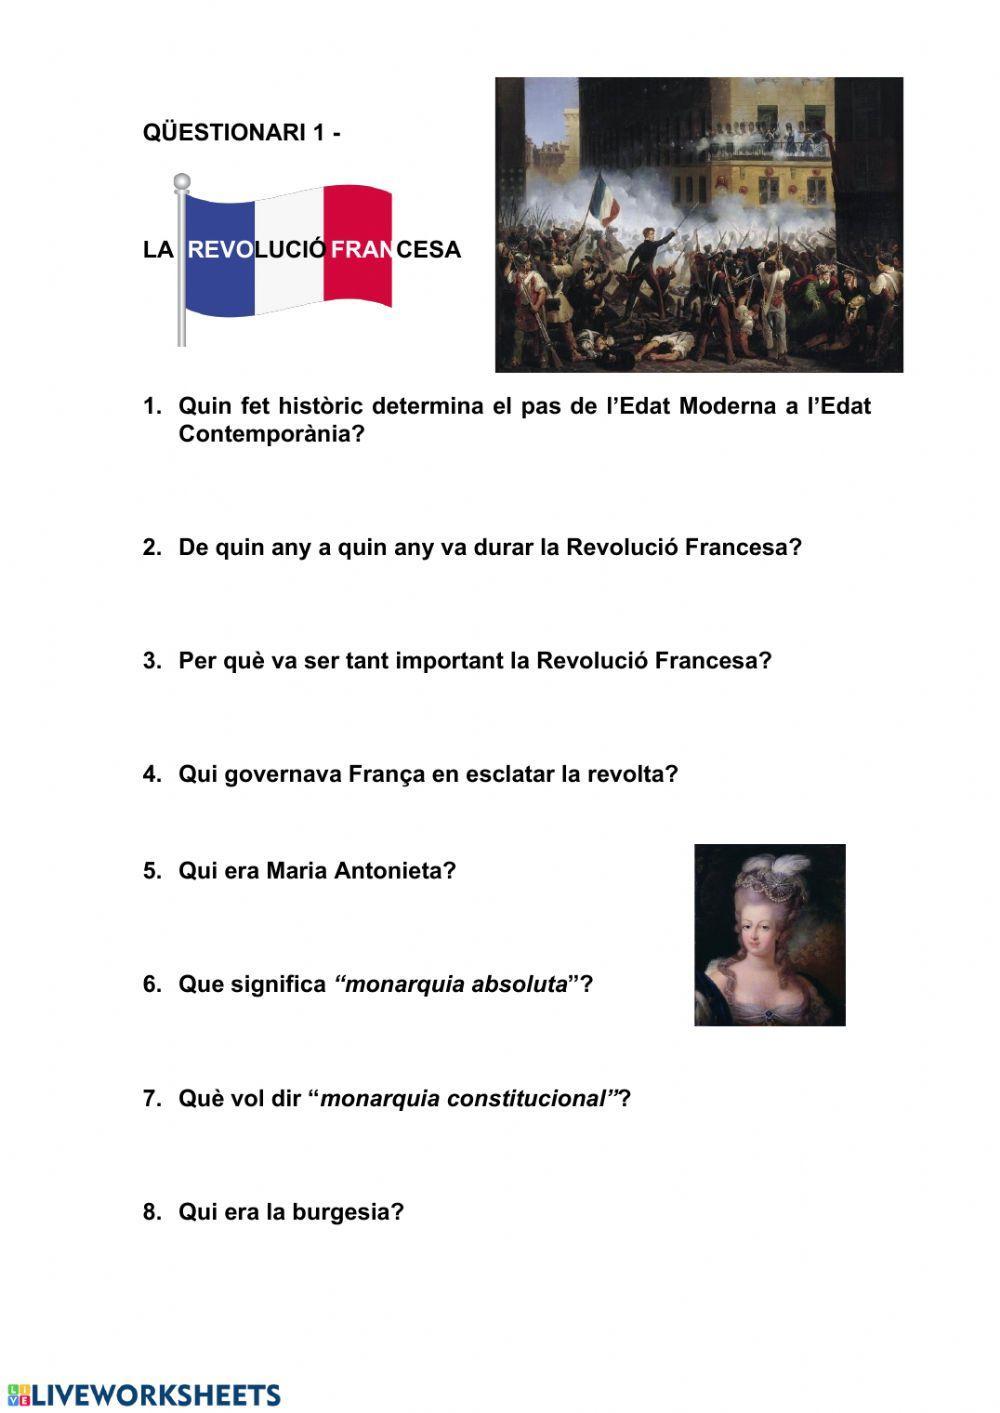 LA REVOLUCIÓ FRANCESA